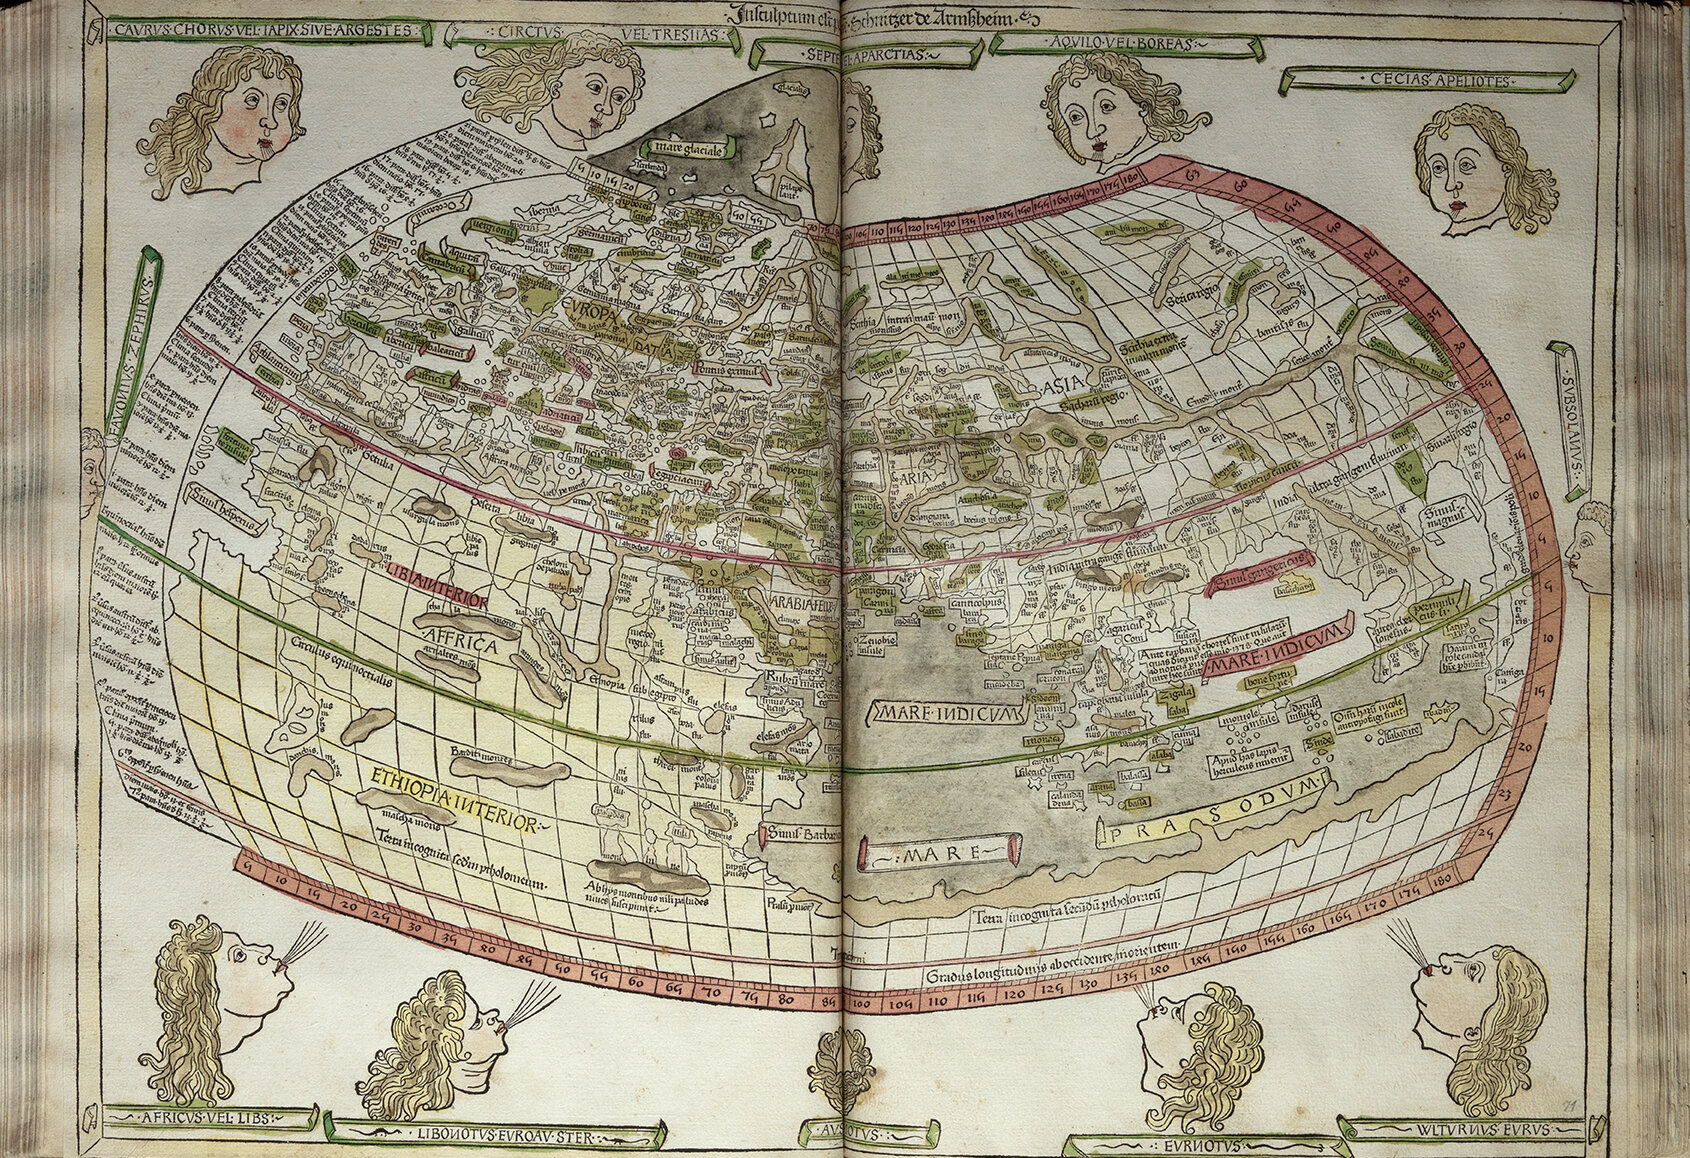 Cosmographia von Claudius Ptolemäus: Feinteilige Weltansicht auf Doppelseite, um die Karte rum schweben blonde Köpfe die teilweise auf die Karte pusten.